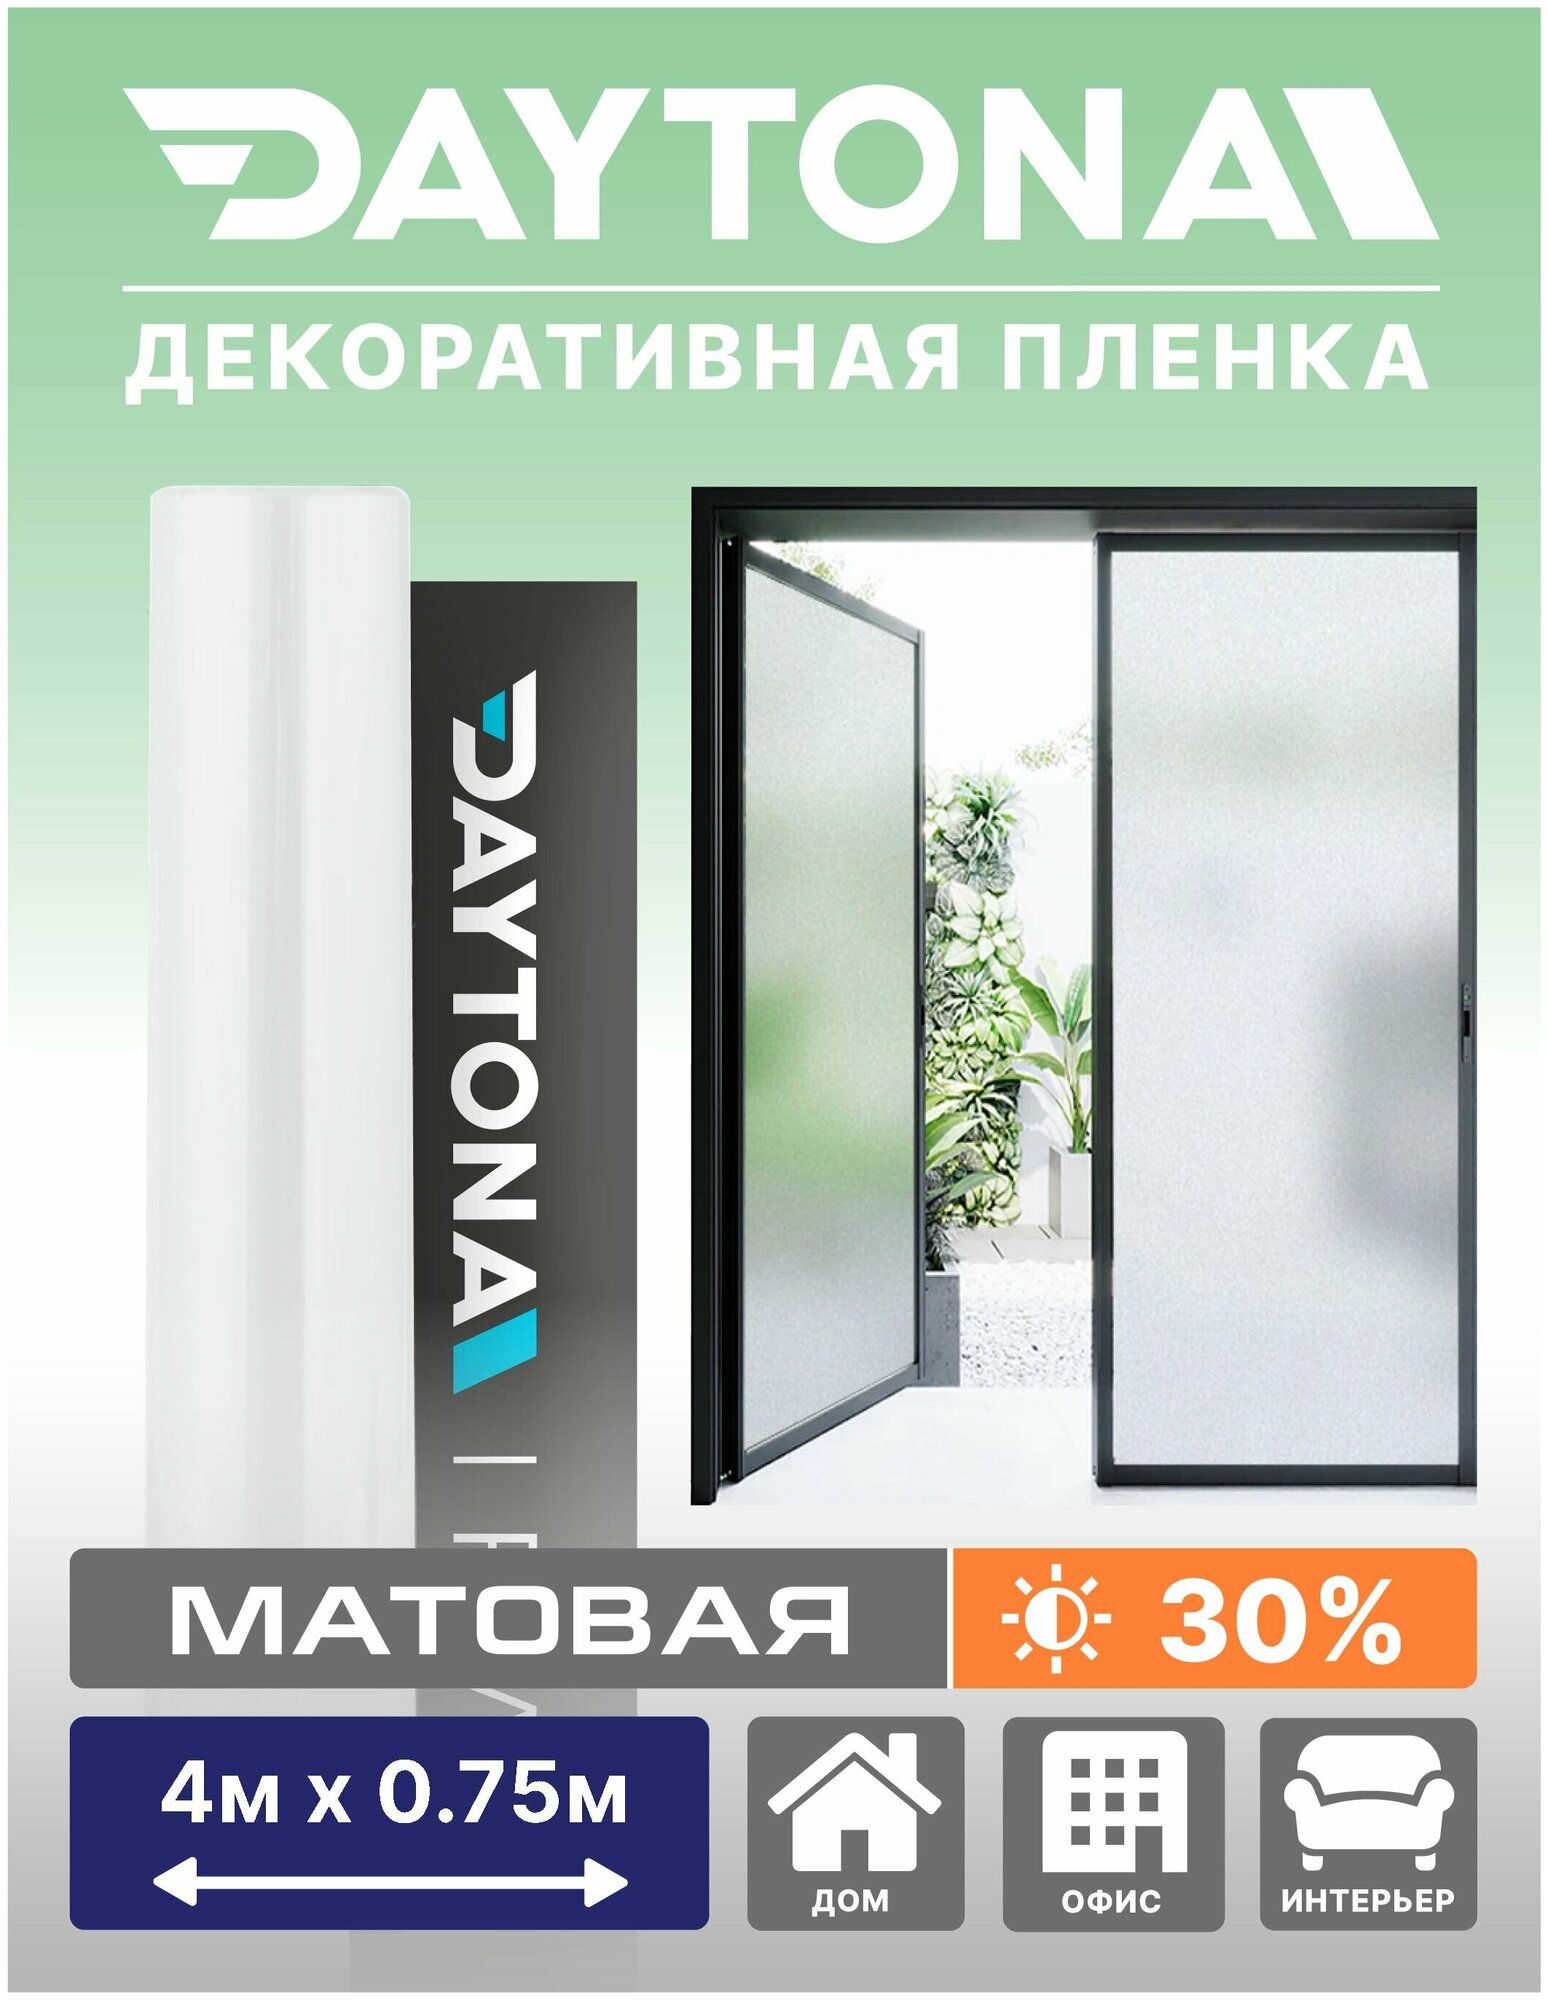 Матовая пленка на окно белая 30% (4м х 0.75м) DAYTONA. Декоративная защита для окон